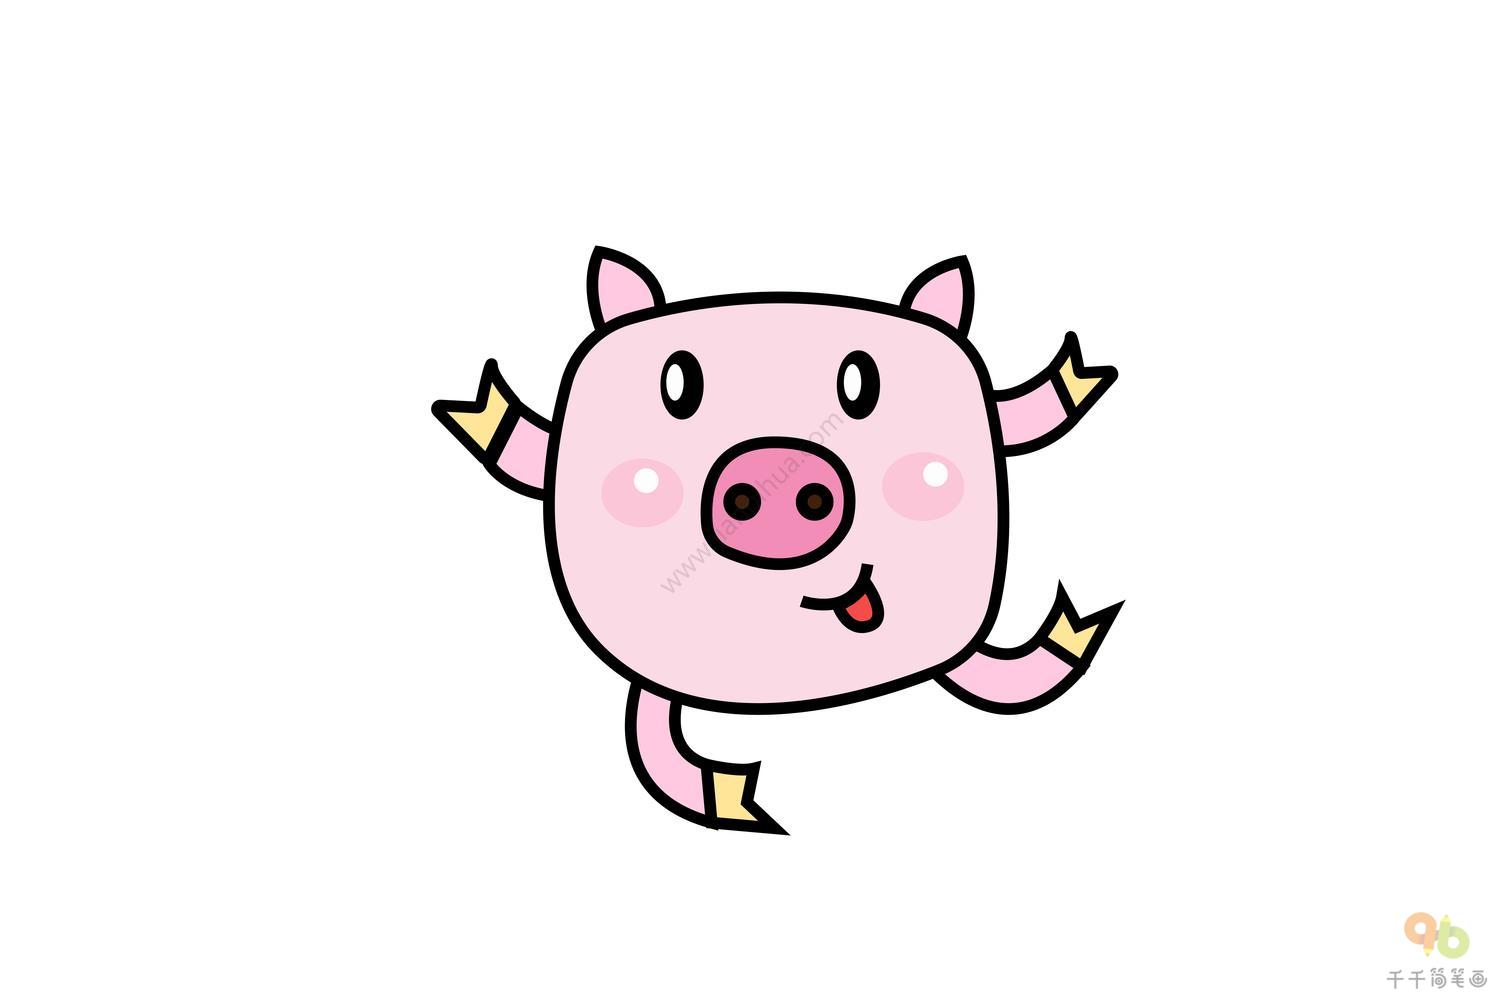 猪奔跑的图片-图库-五毛网